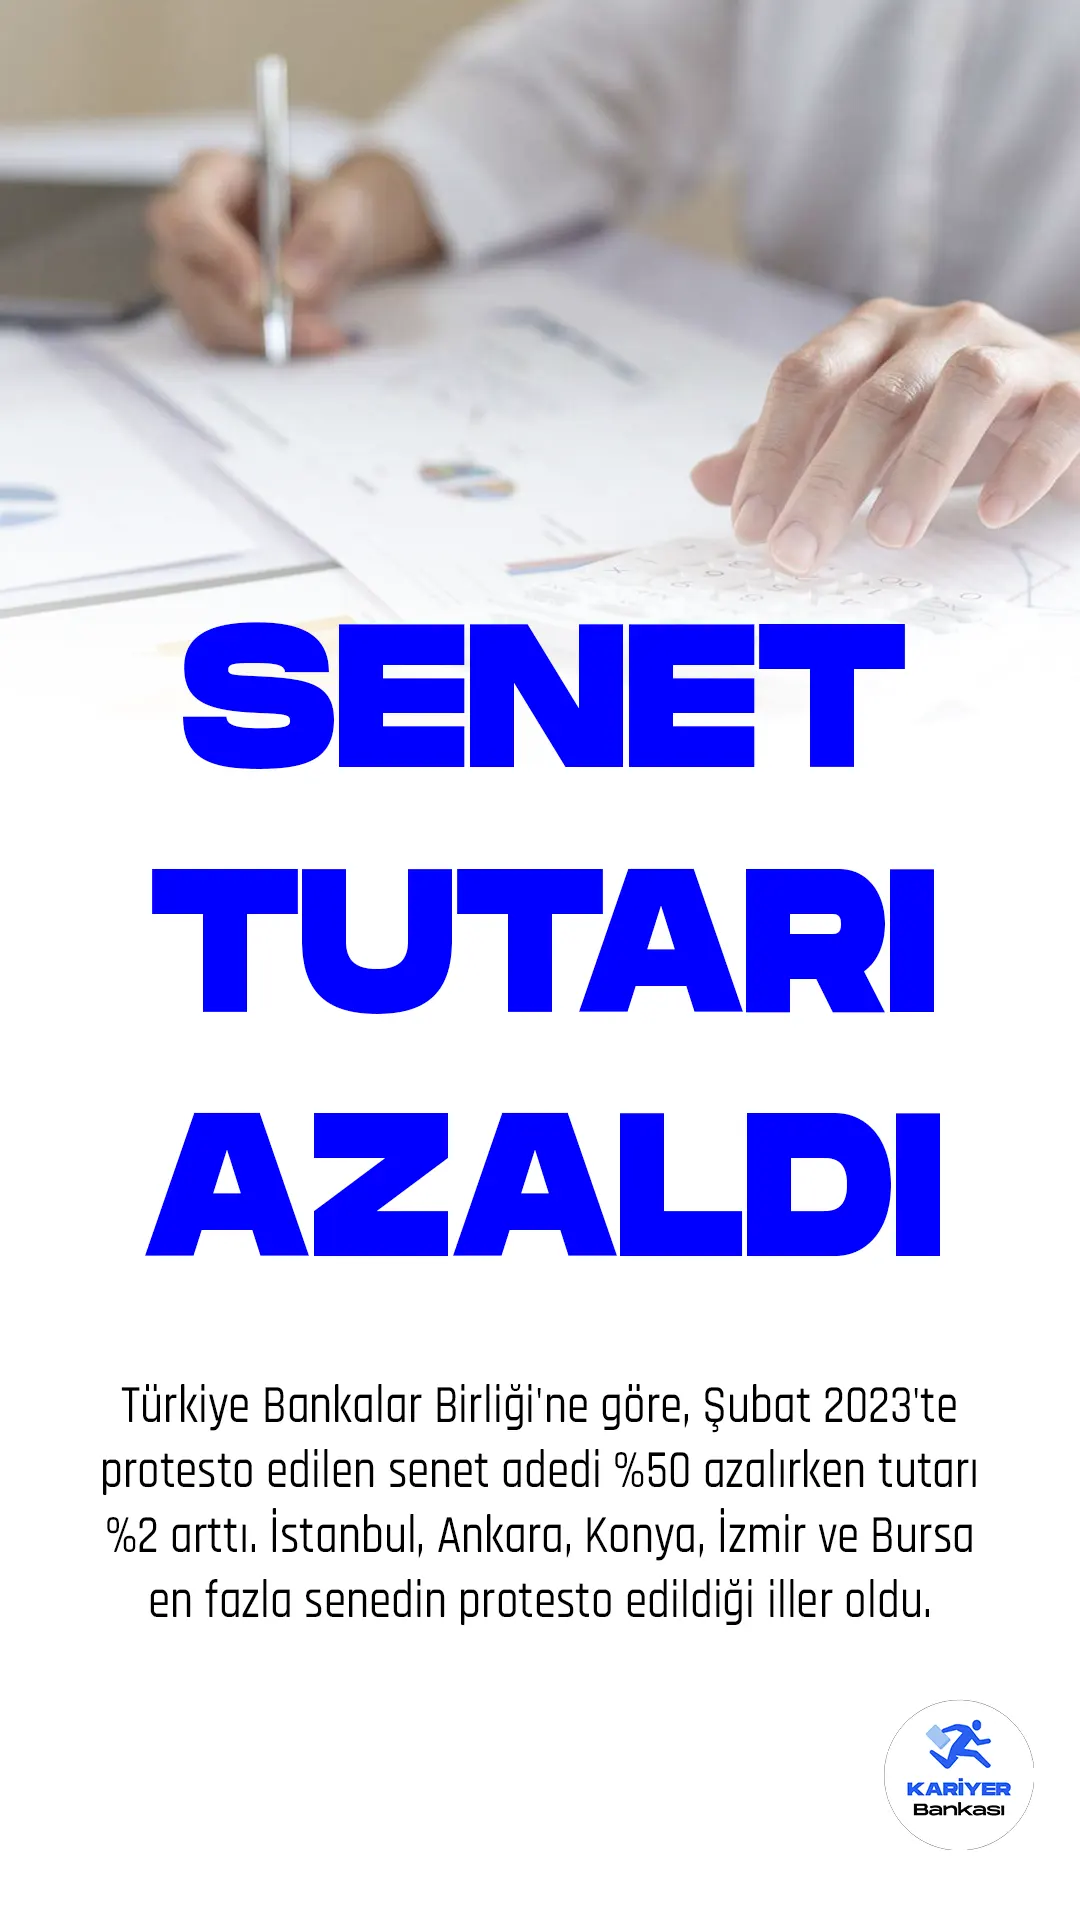 Türkiye Bankalar Birliği'ne göre, Şubat 2023'te protesto edilen senet adedi %50 azalırken tutarı %2 arttı. İstanbul, Ankara, Konya, İzmir ve Bursa en fazla senedin protesto edildiği iller oldu.